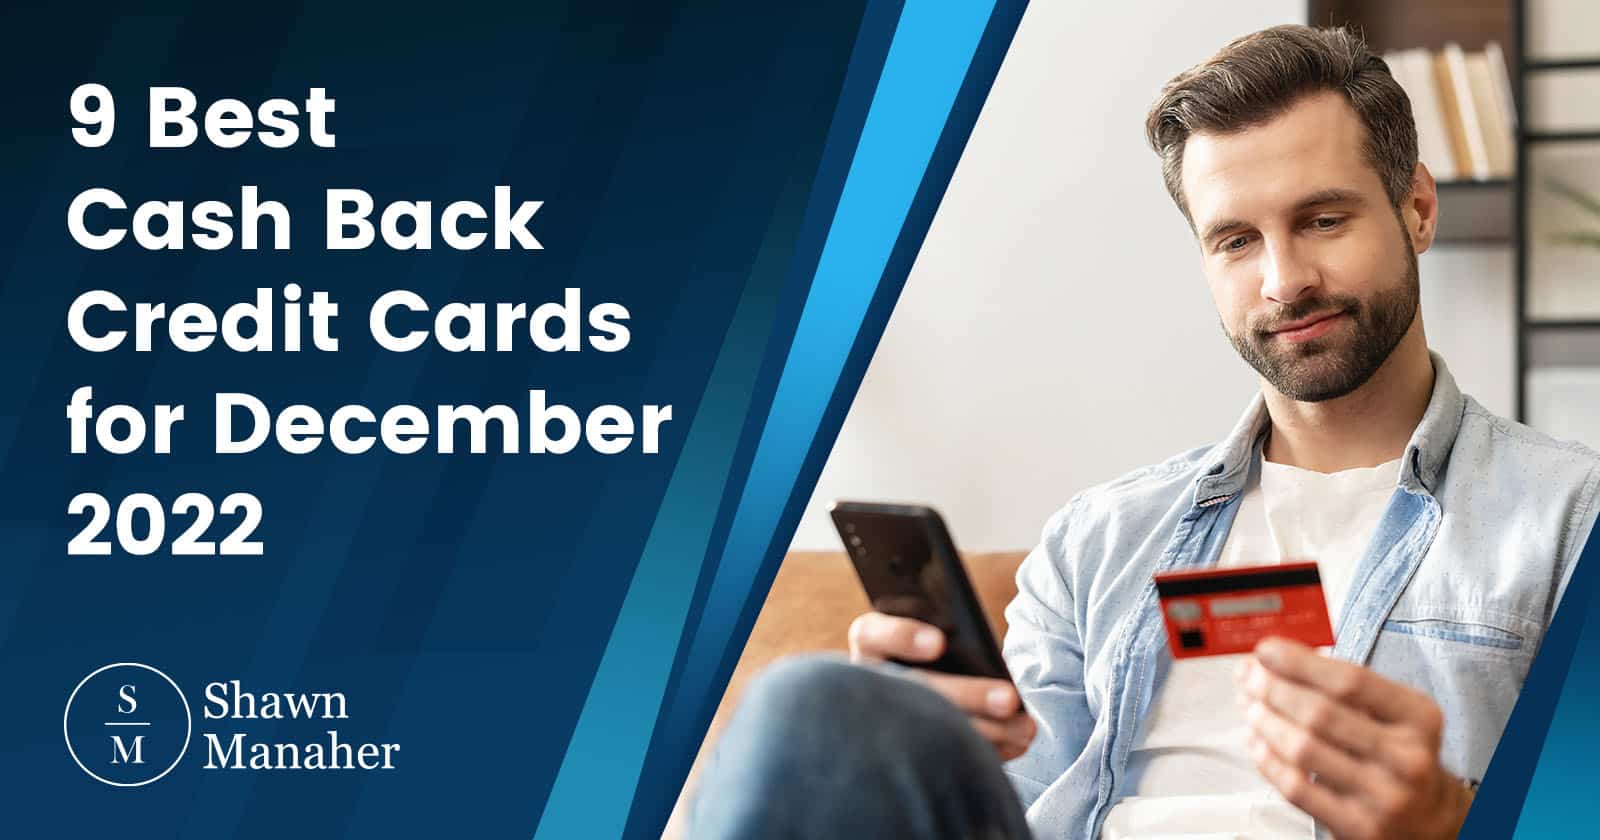 9 Best Cash Back Credit Cards for December 2022